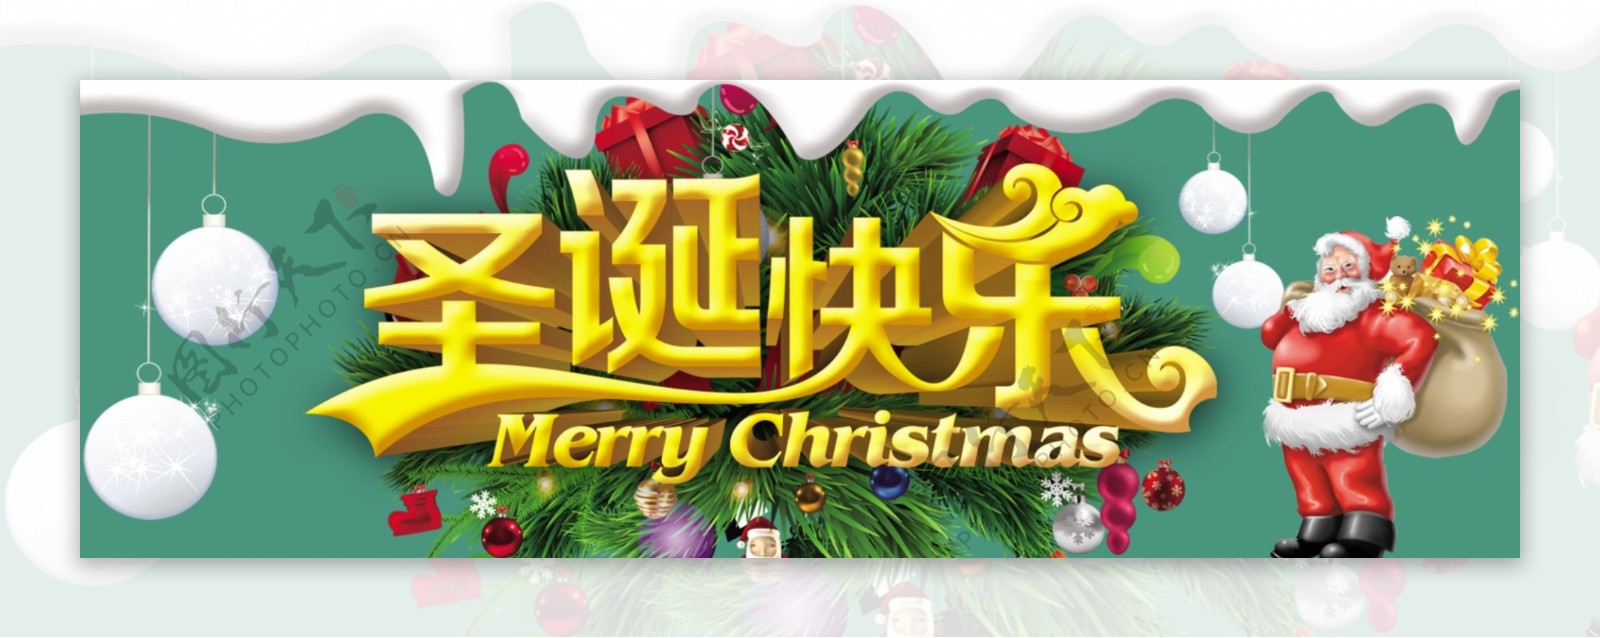 圣诞快乐促销海报淘宝店铺装修图片